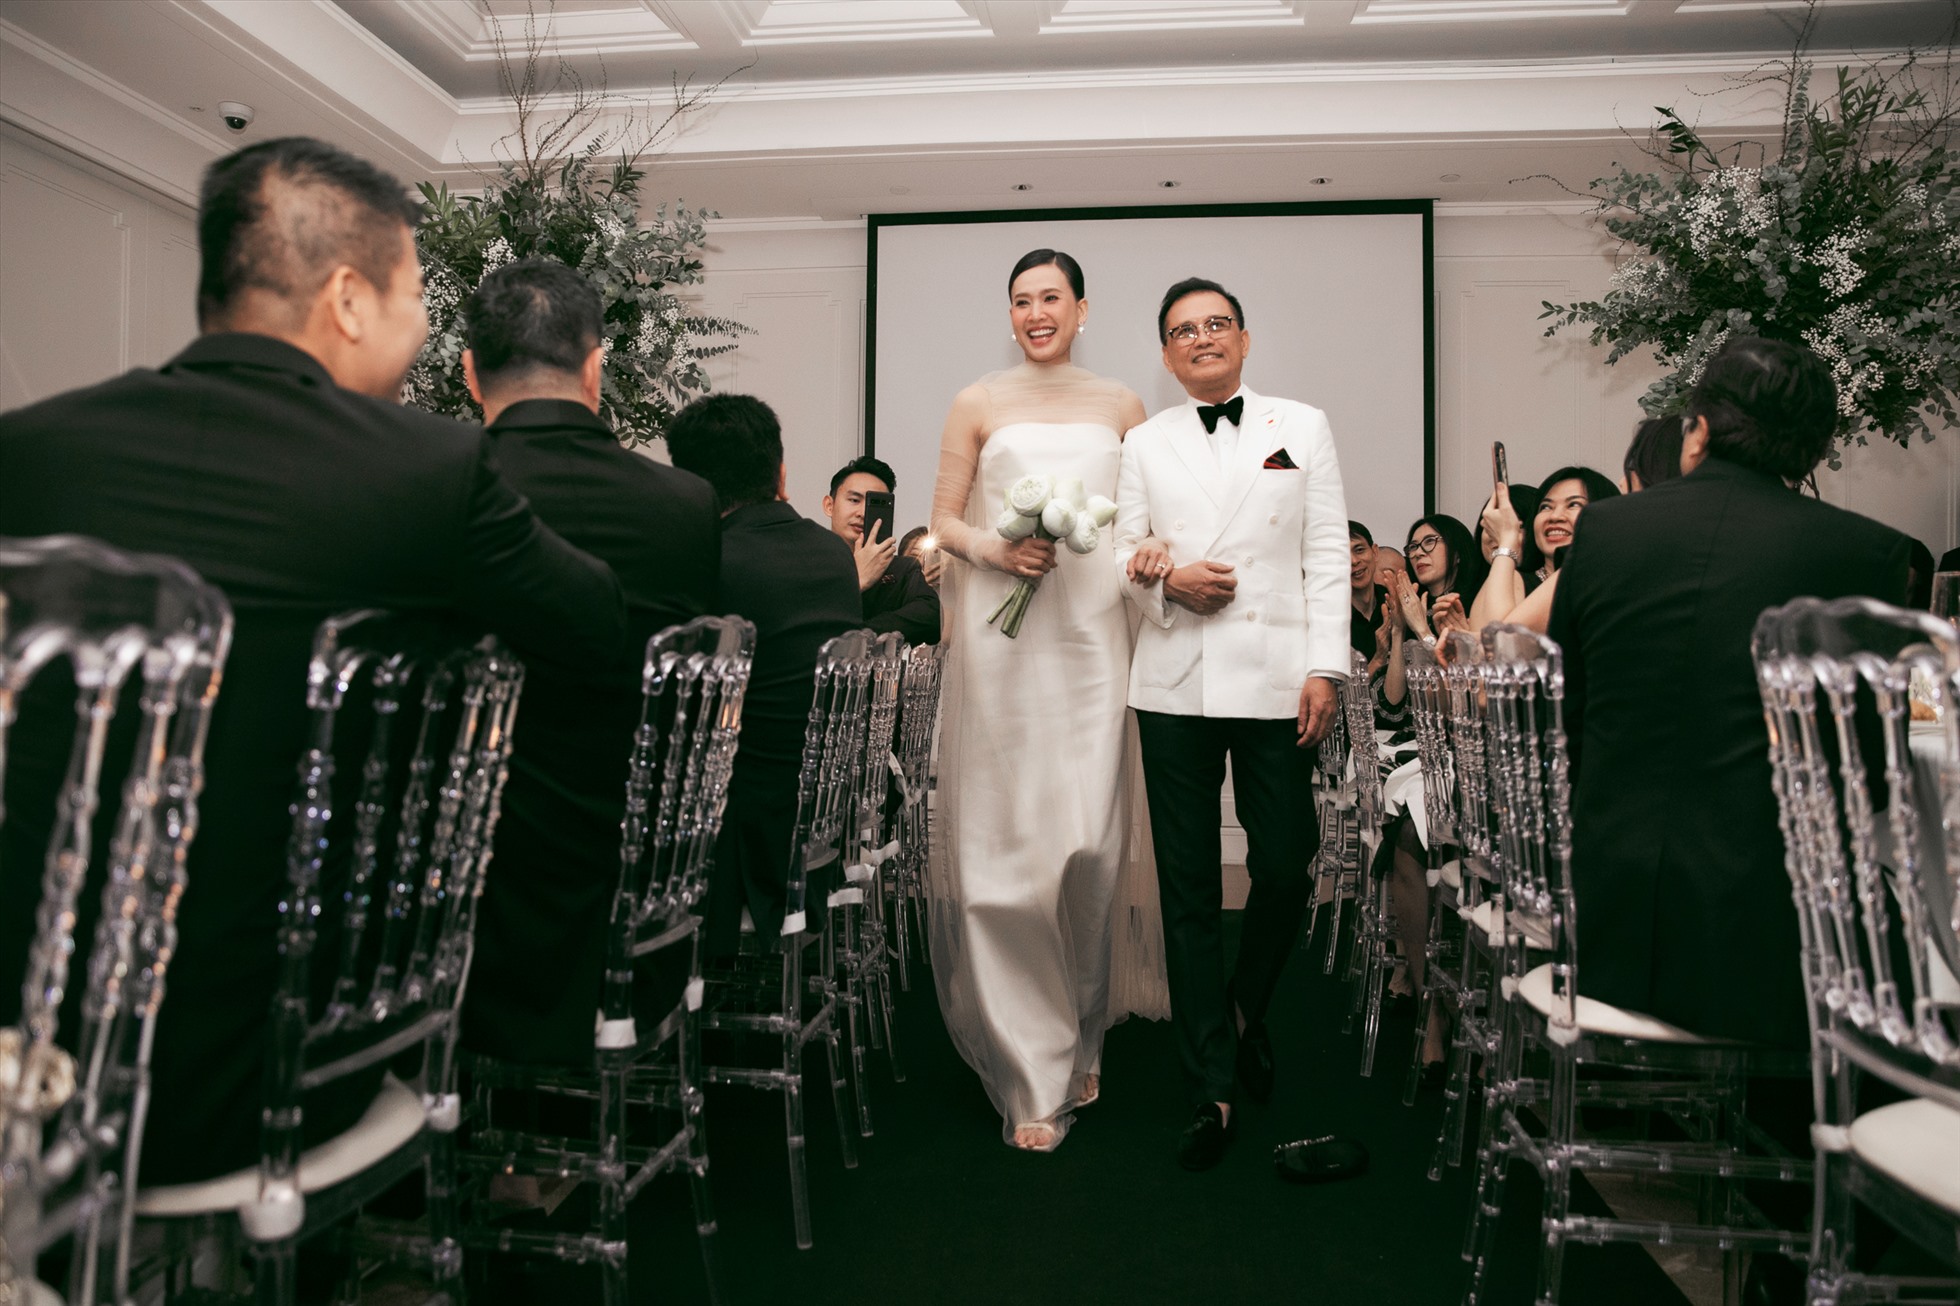 Trong tiệc cưới, Hoa hậu Dương Mỹ Linh lựa chọn hai bộ váy trắng thanh lịch, sang trọng của nhà thiết kế Đỗ Mạnh Cường và Lâm Gia Khang. Ảnh: Kiếng Cận